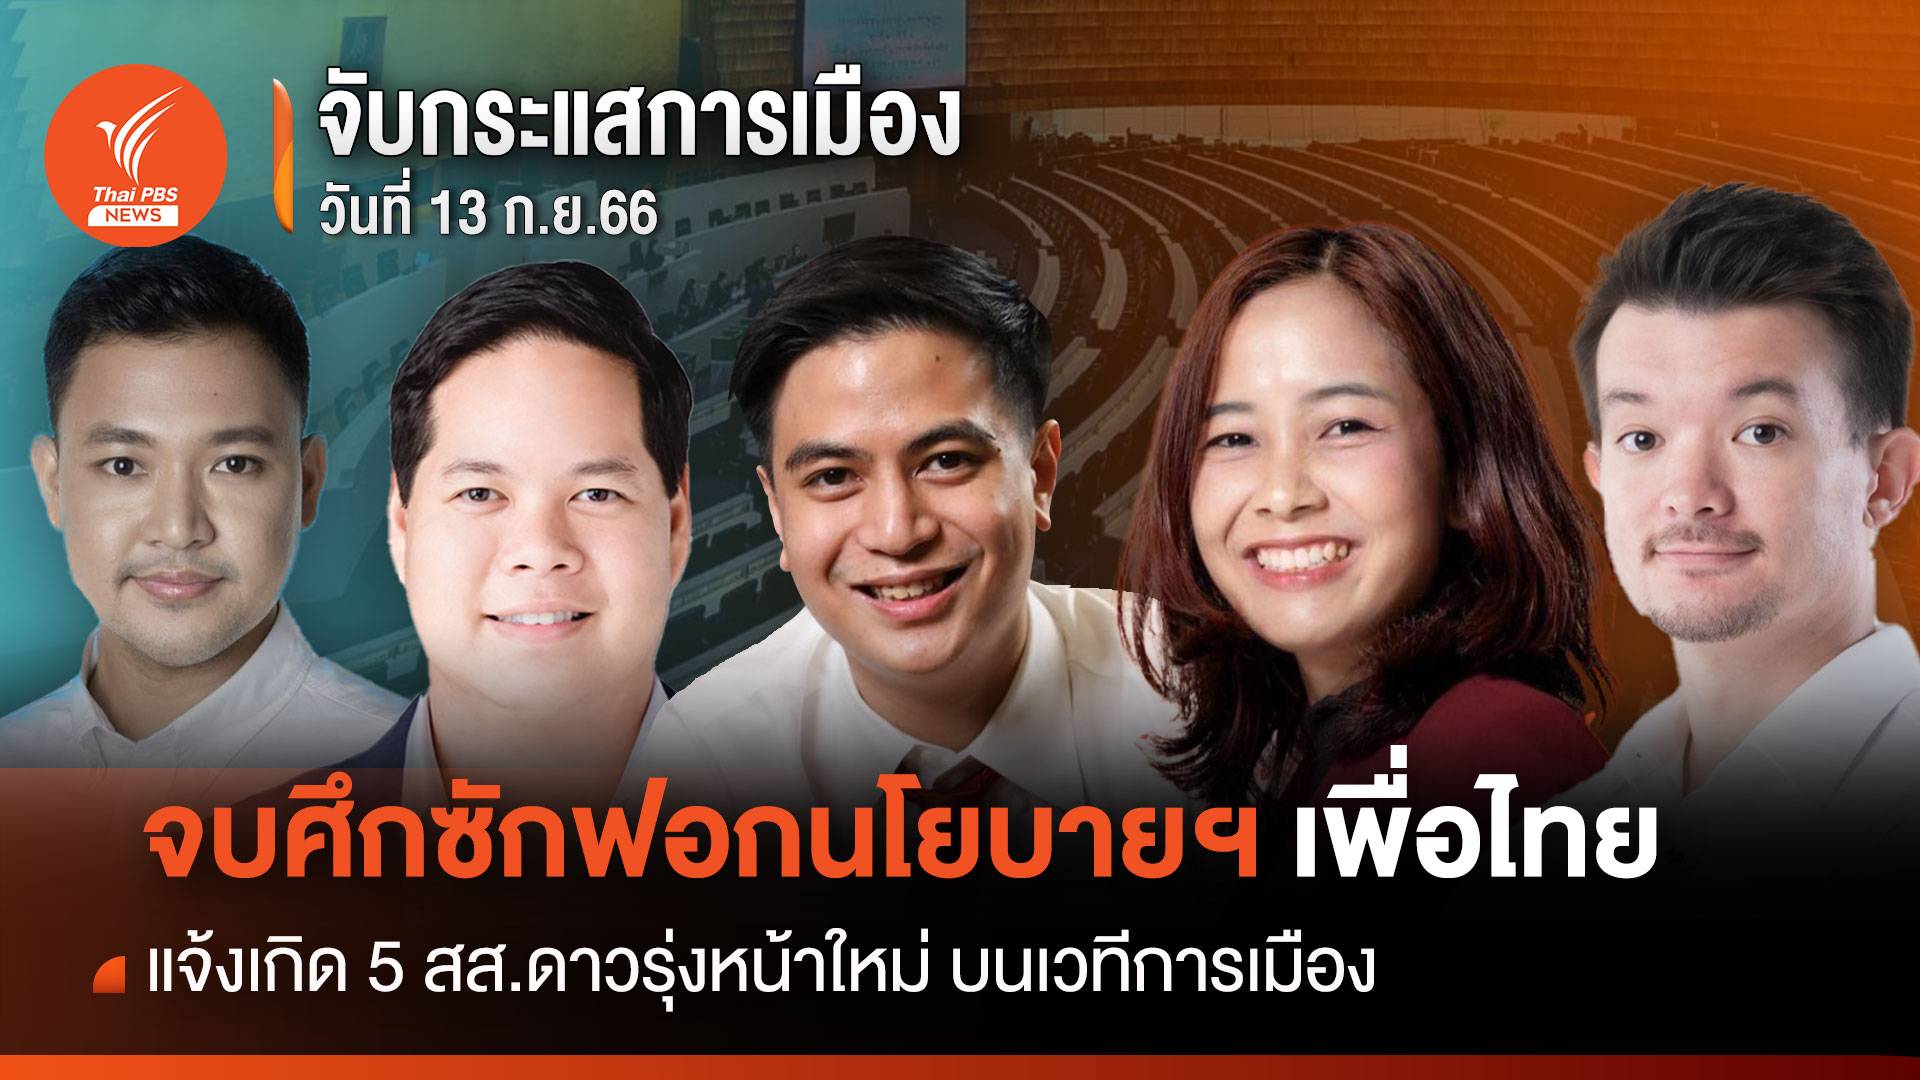 จับกระแสการเมือง 20 ก.ย.66 จบศึกซักฟอกนโยบายฯเพื่อไทย แจ้งเกิด 5 สส.ดาวรุ่งหน้าใหม่ บนเวทีการเมือง